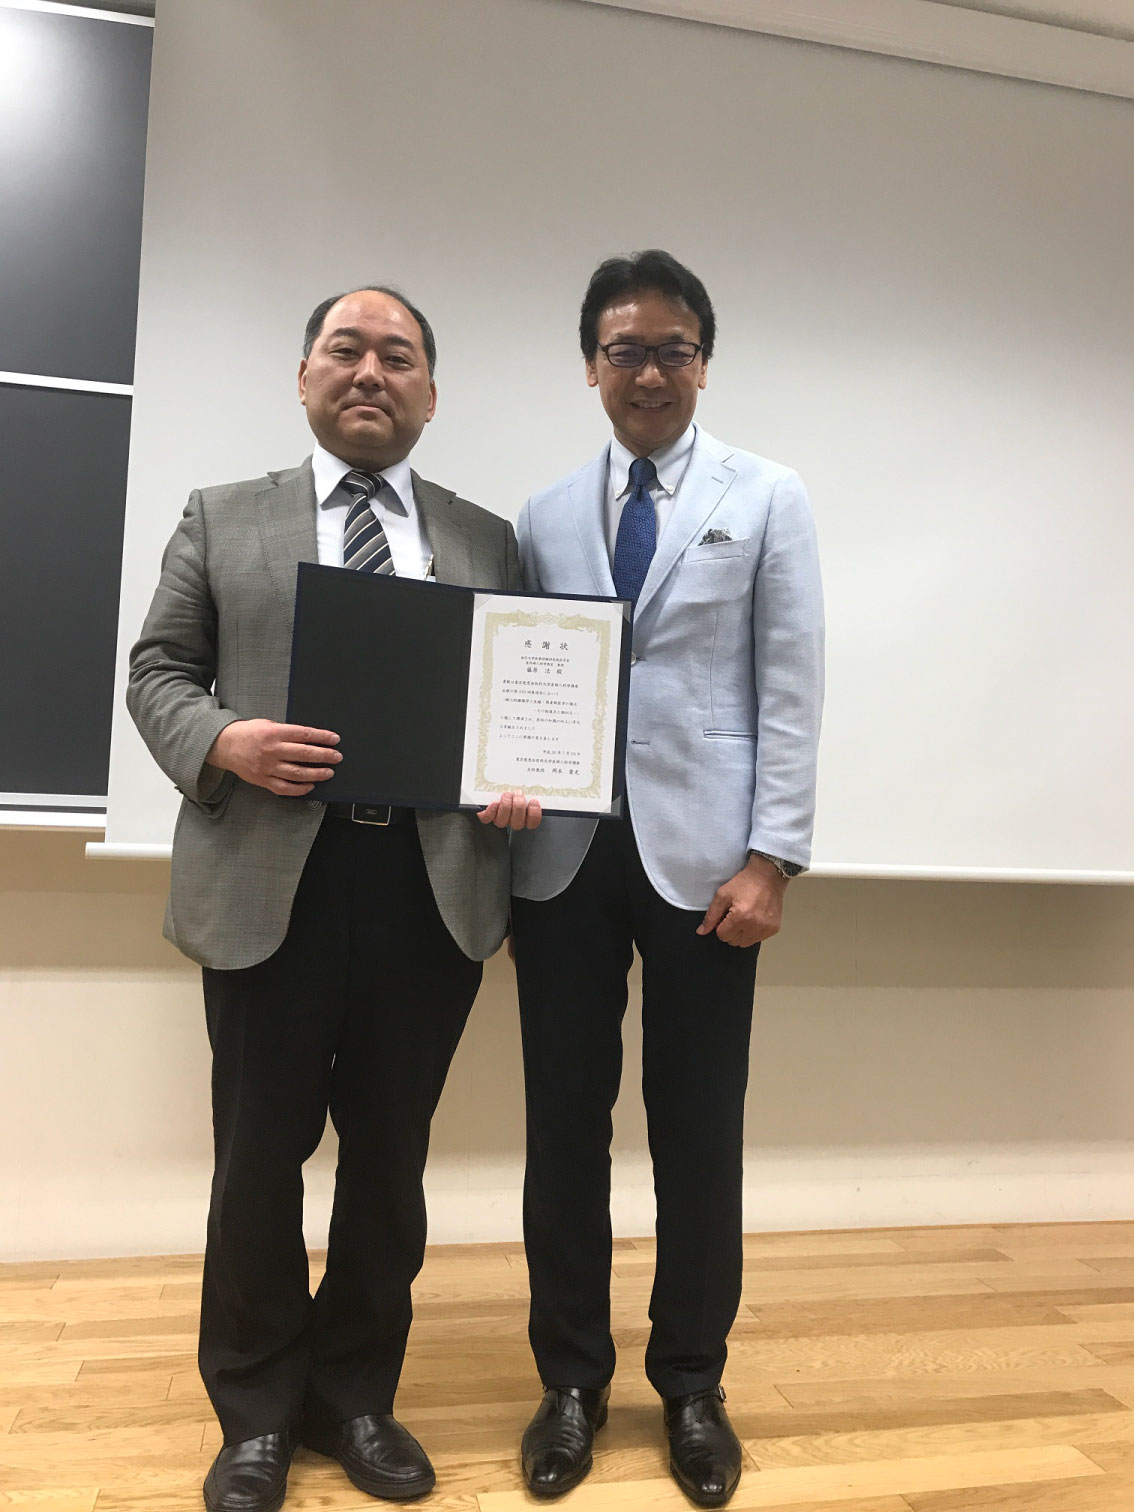 「第133回集談会で金沢大学 産科婦人科学講座教授 藤原浩先生にご講演いただきました。